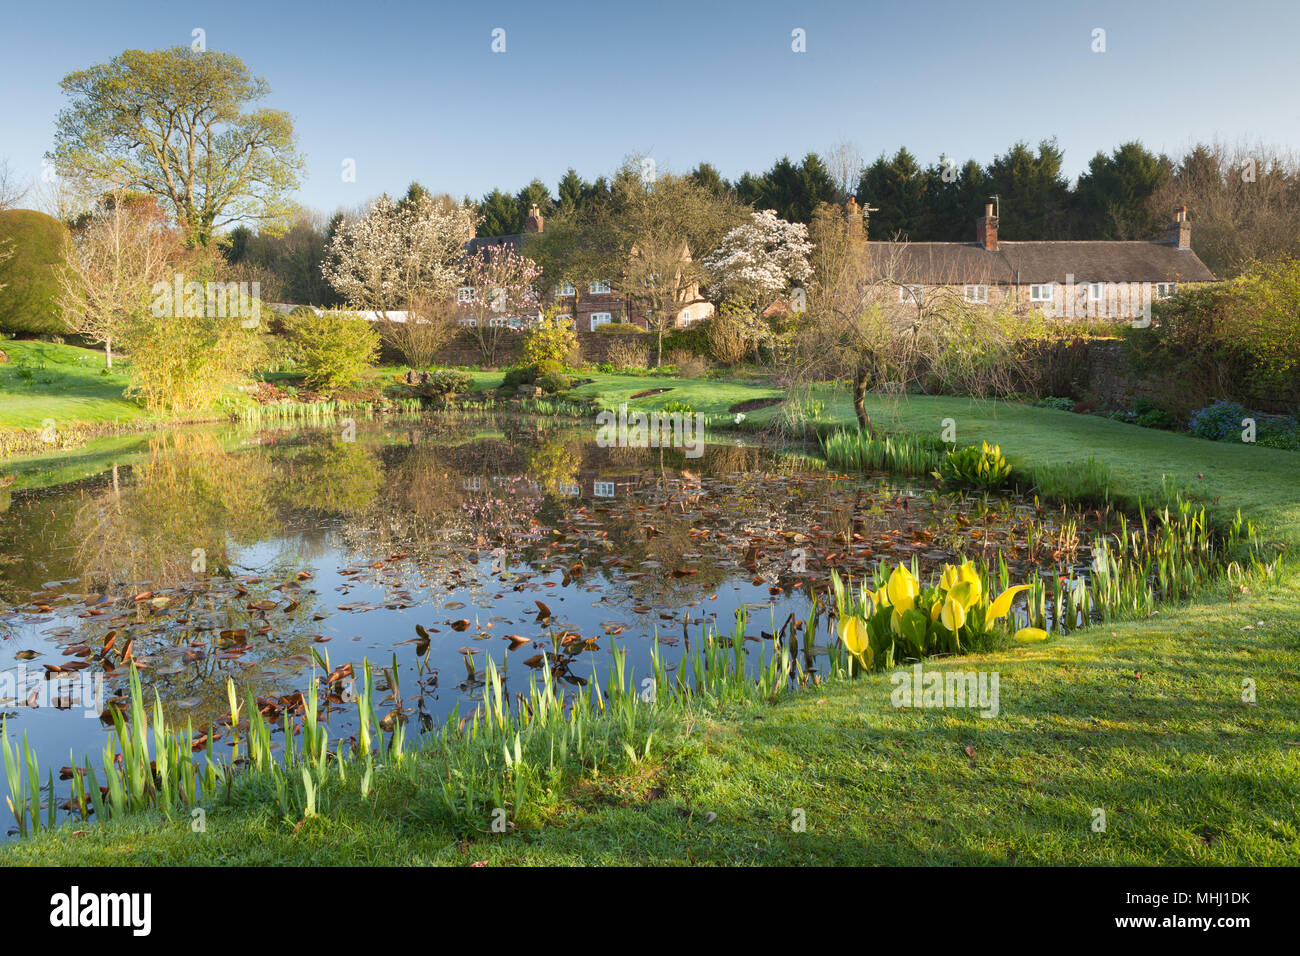 Felley jardins du Prieuré, Felley Prieuré, Underwood, Dorset, UK. Printemps, avril 2018. Banque D'Images